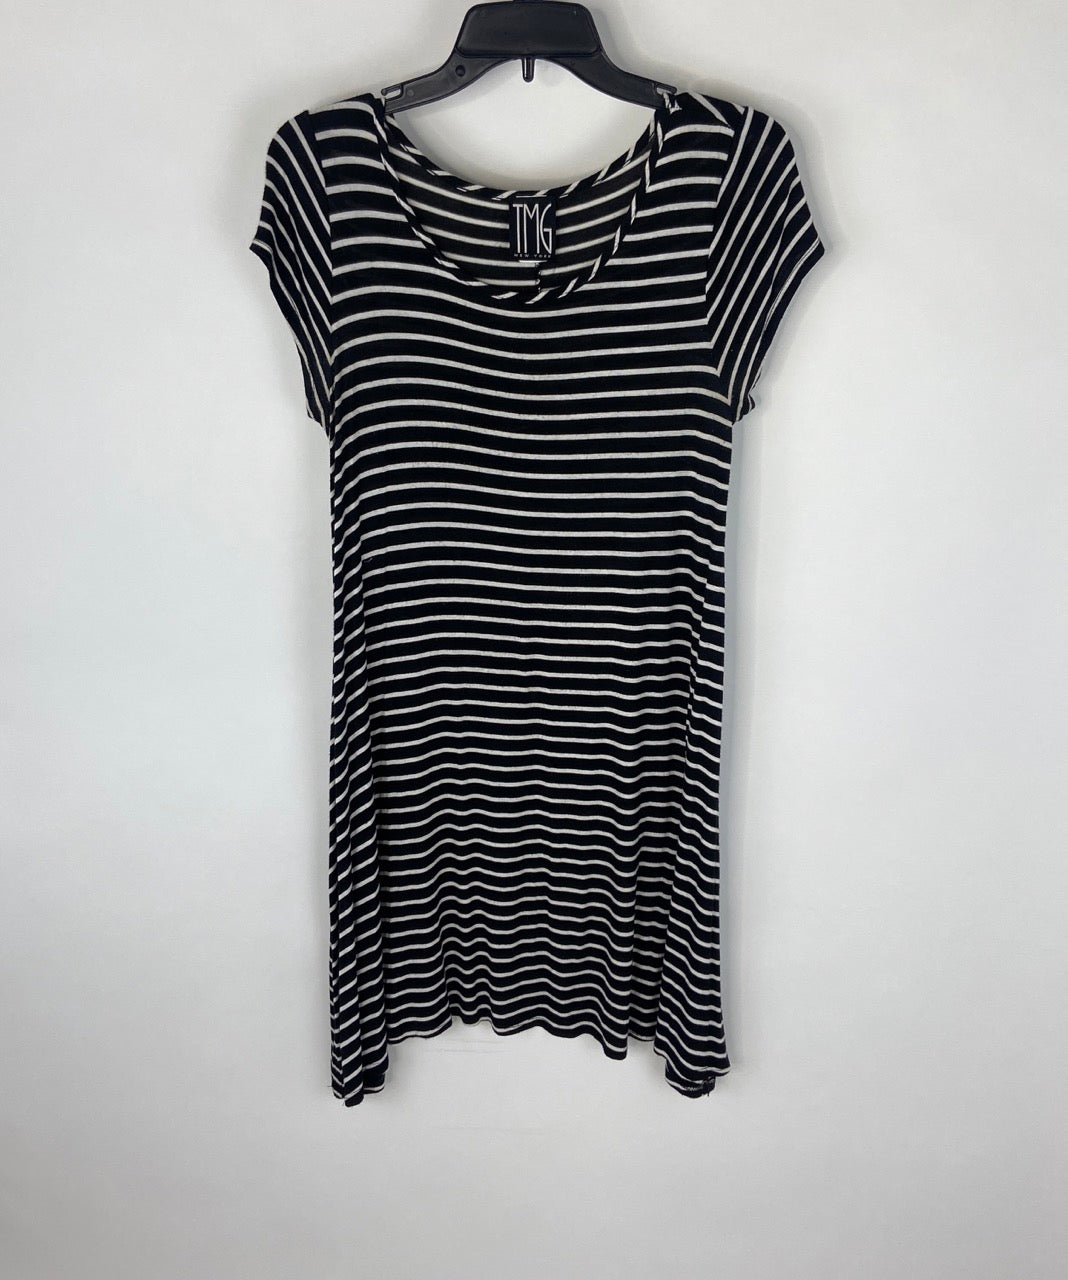 Black & White Striped Dress - M